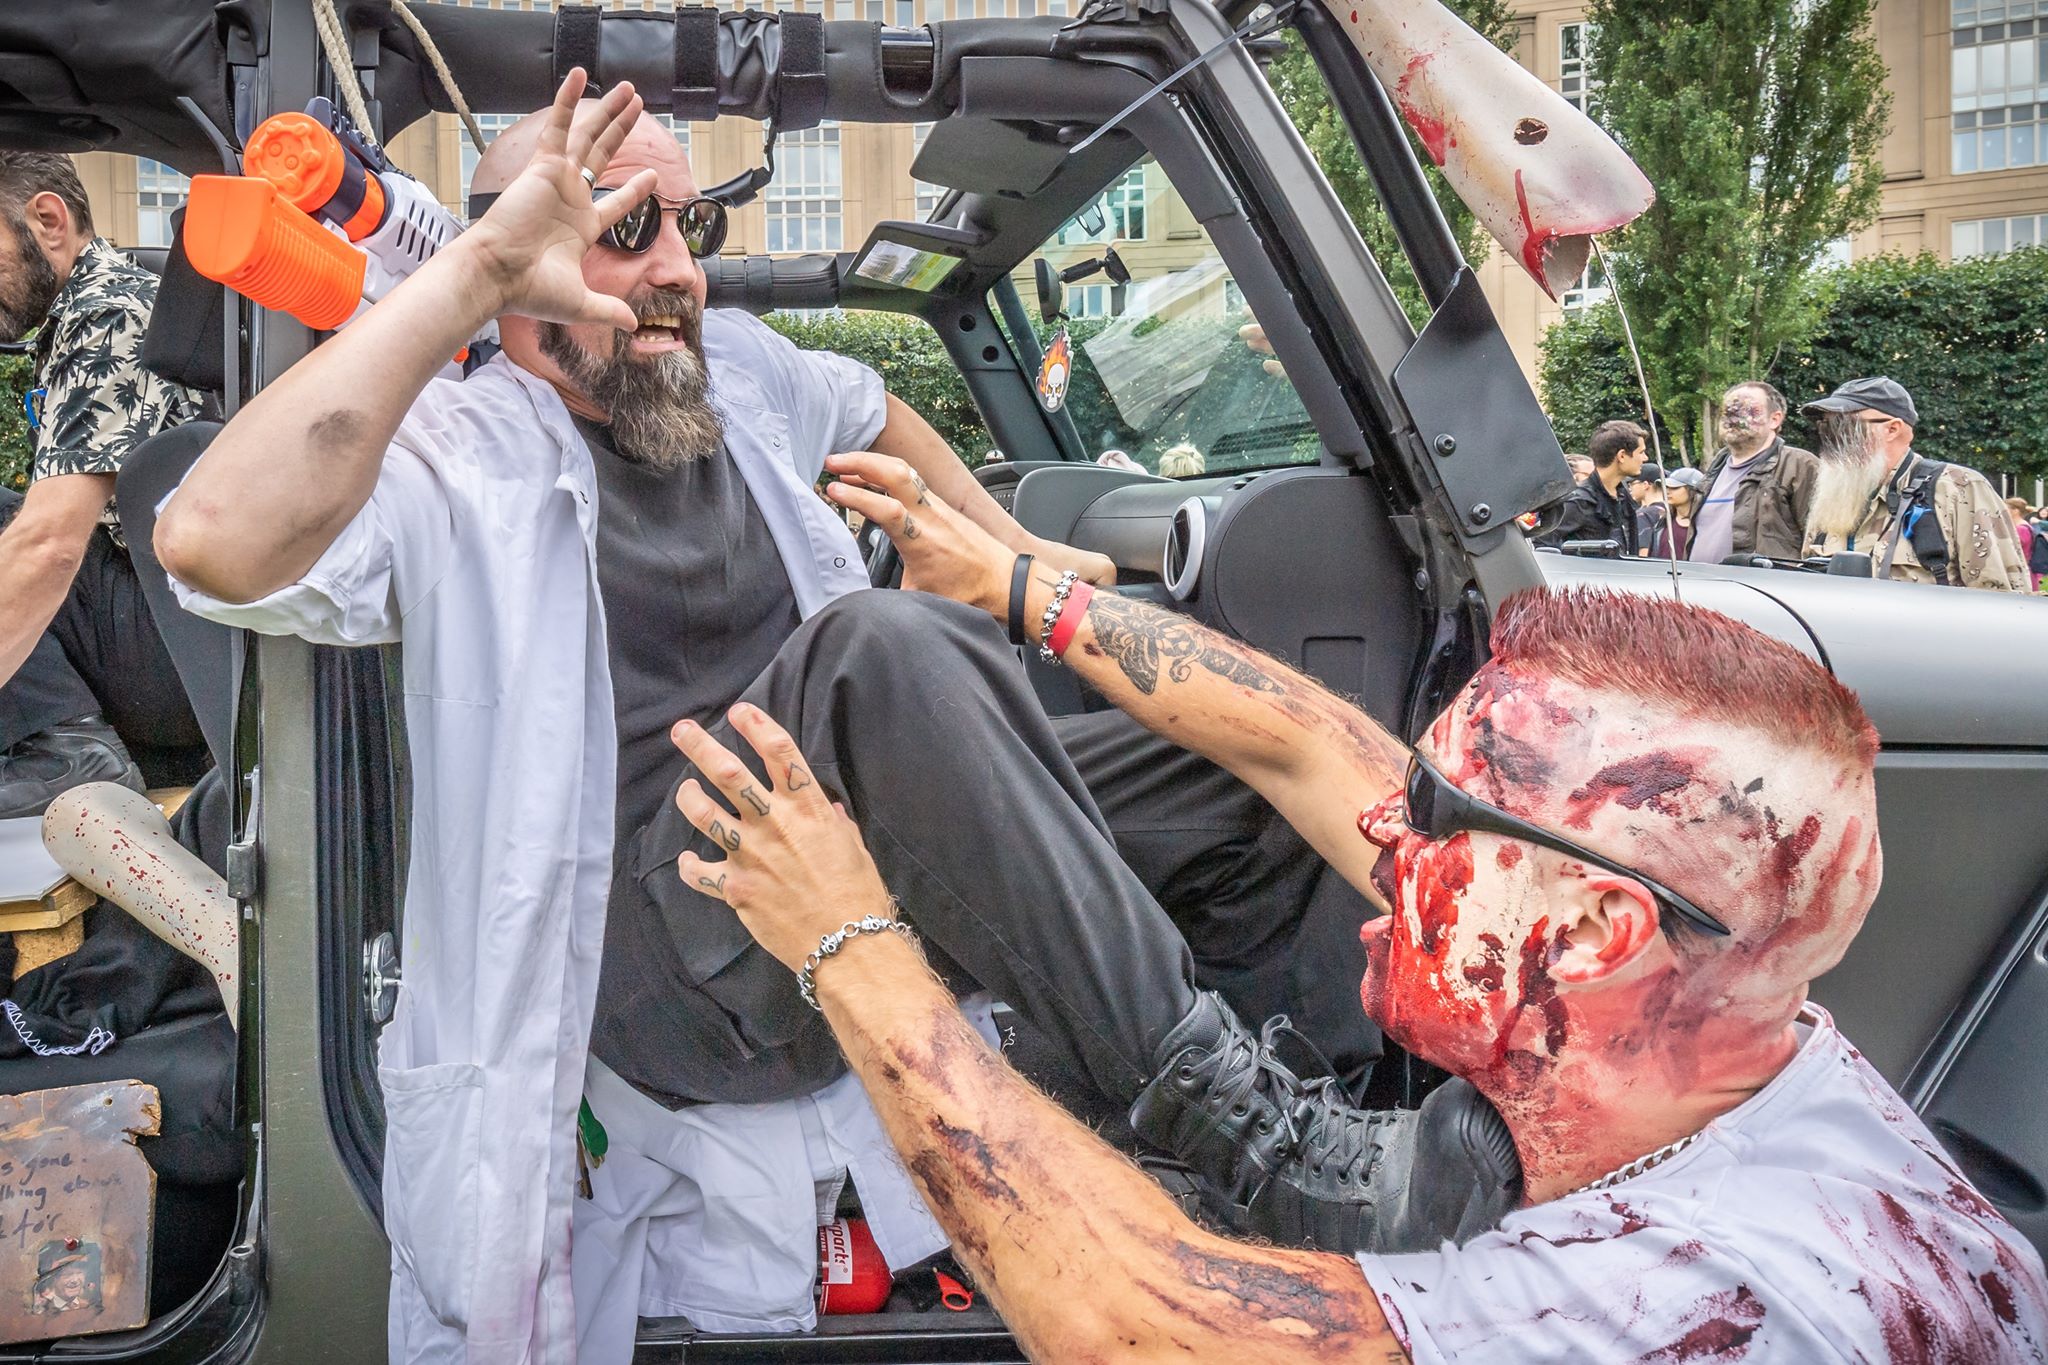 Zombie attackerar vetenskapsmannen som skapat dem. Foto: Olav Holten / pp-press